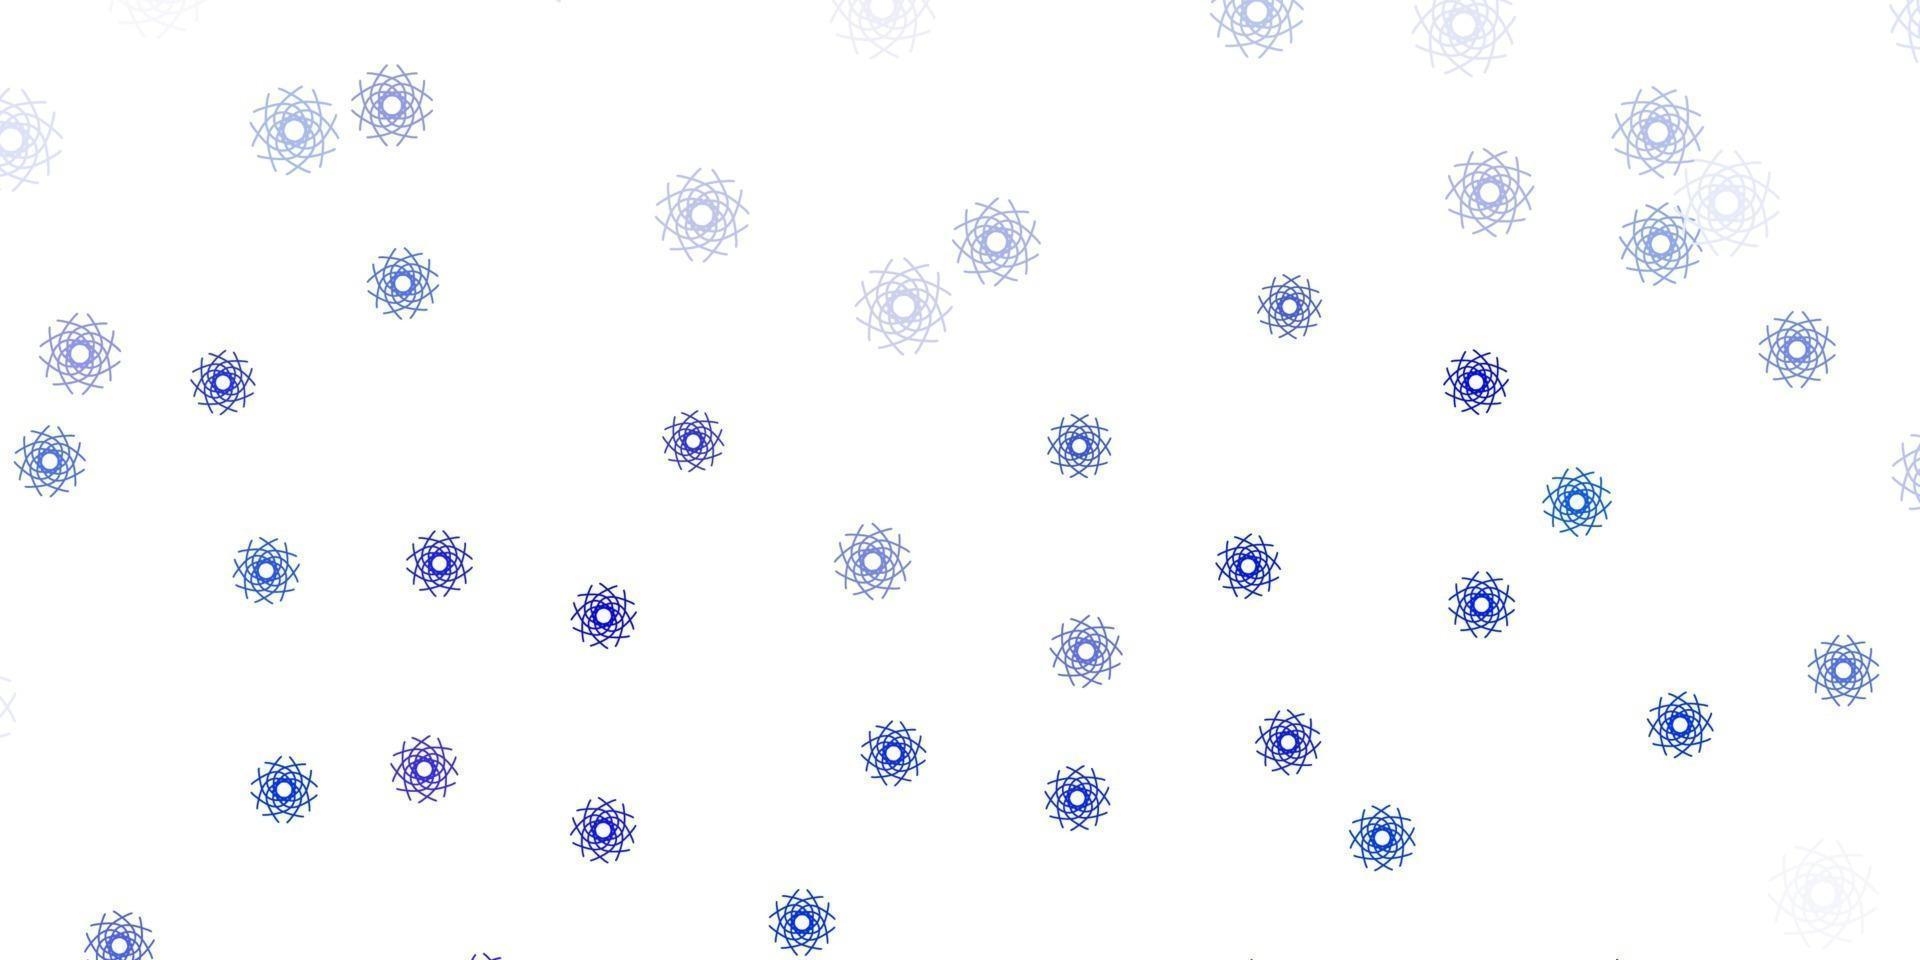 modello di doodle vettoriale azzurro con fiori.